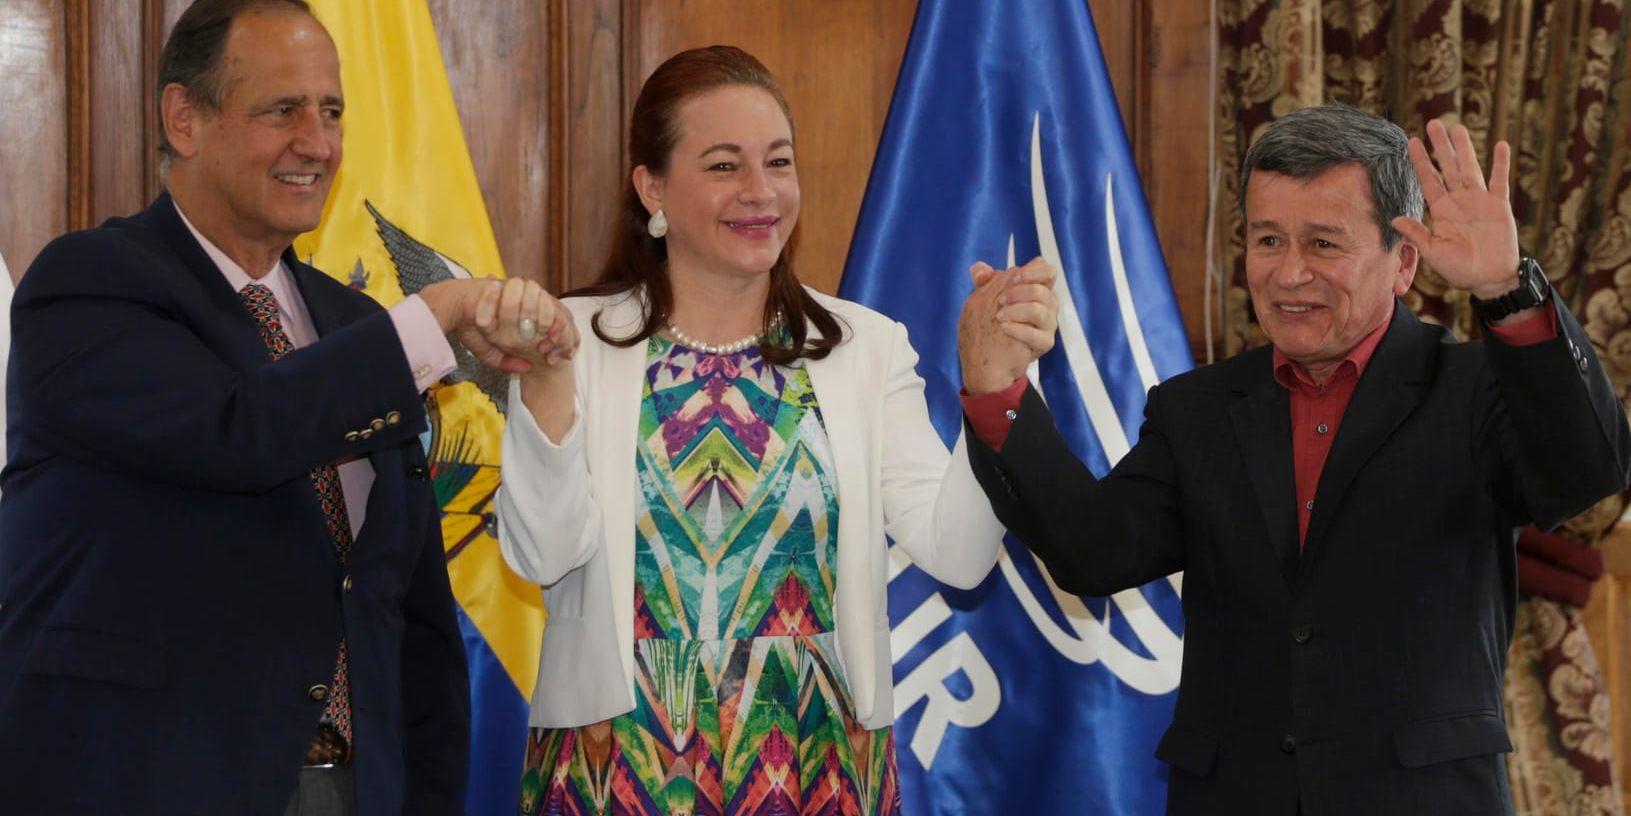 Ecuadors utrikesminister María Fernanda Espinosa (i mitten) står mellan ELN-ledaren Pablo Beltrán (till höger) och Juan Camilo Restrepo, representant för Colombias regering, i samband med att överenskommelsen om fredsavtalet tillkännagavs. Arkivbild.